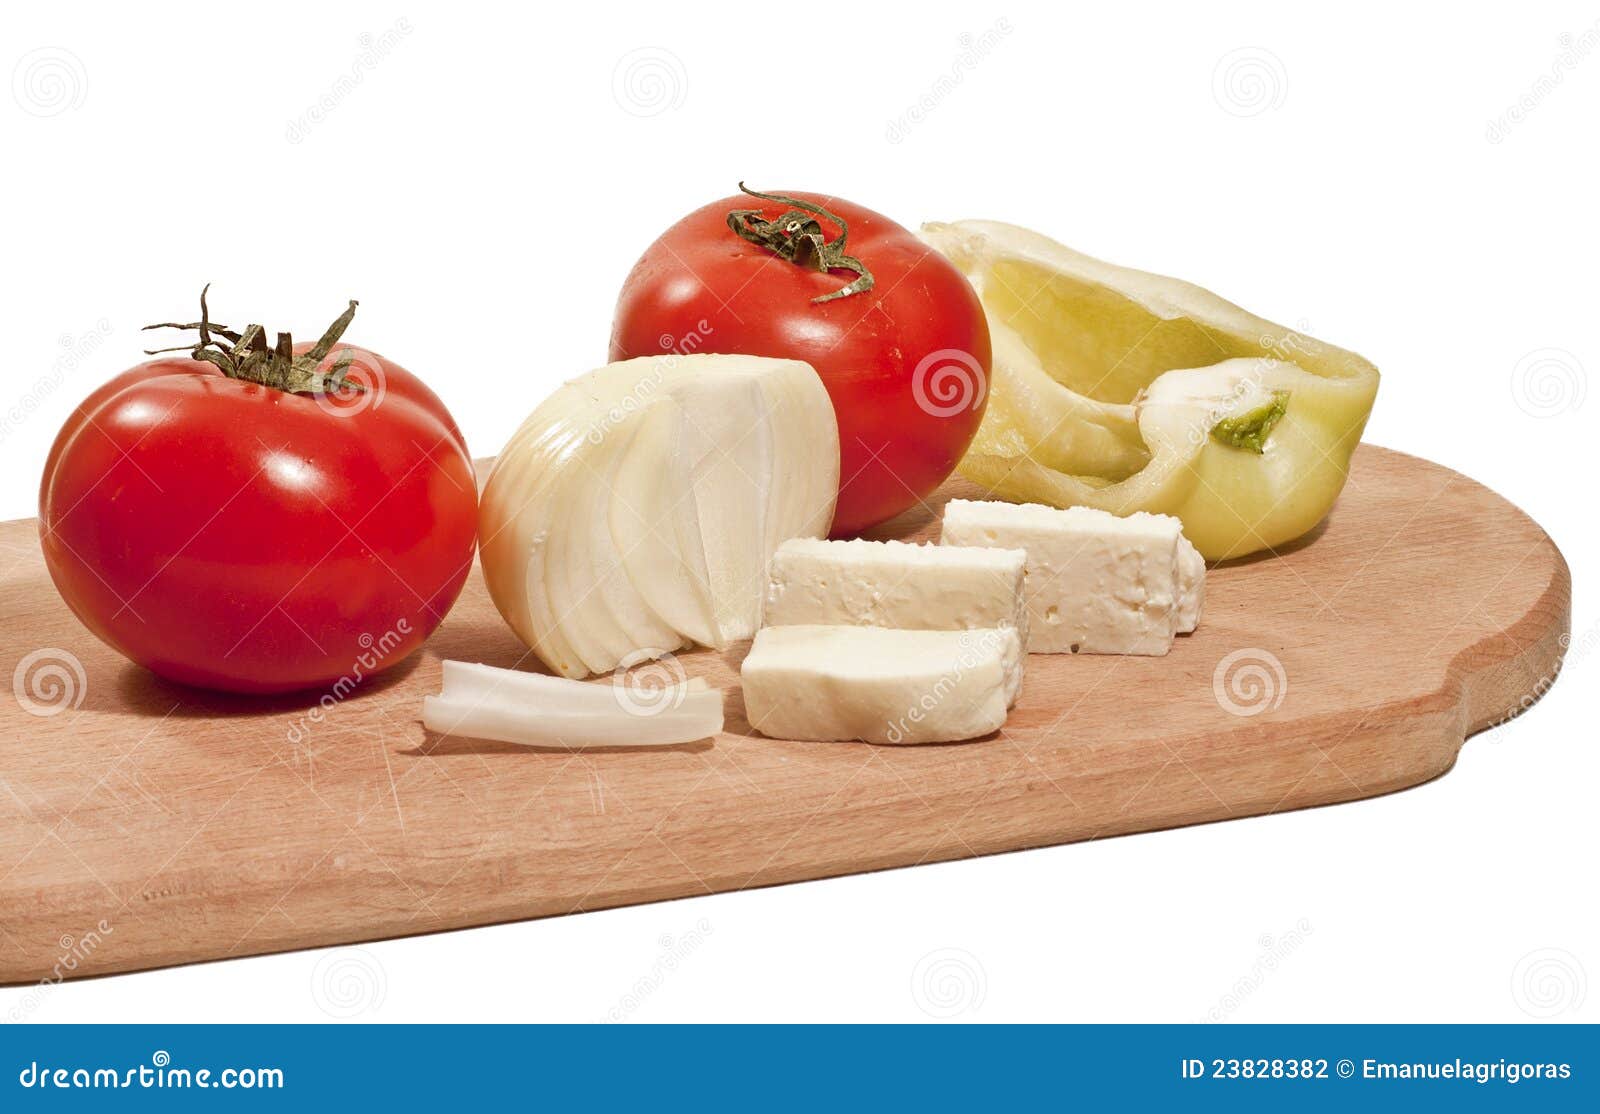 Vegetais com queijo. Legumes frescos com queijo na placa de desbastamento isolada no fundo branco